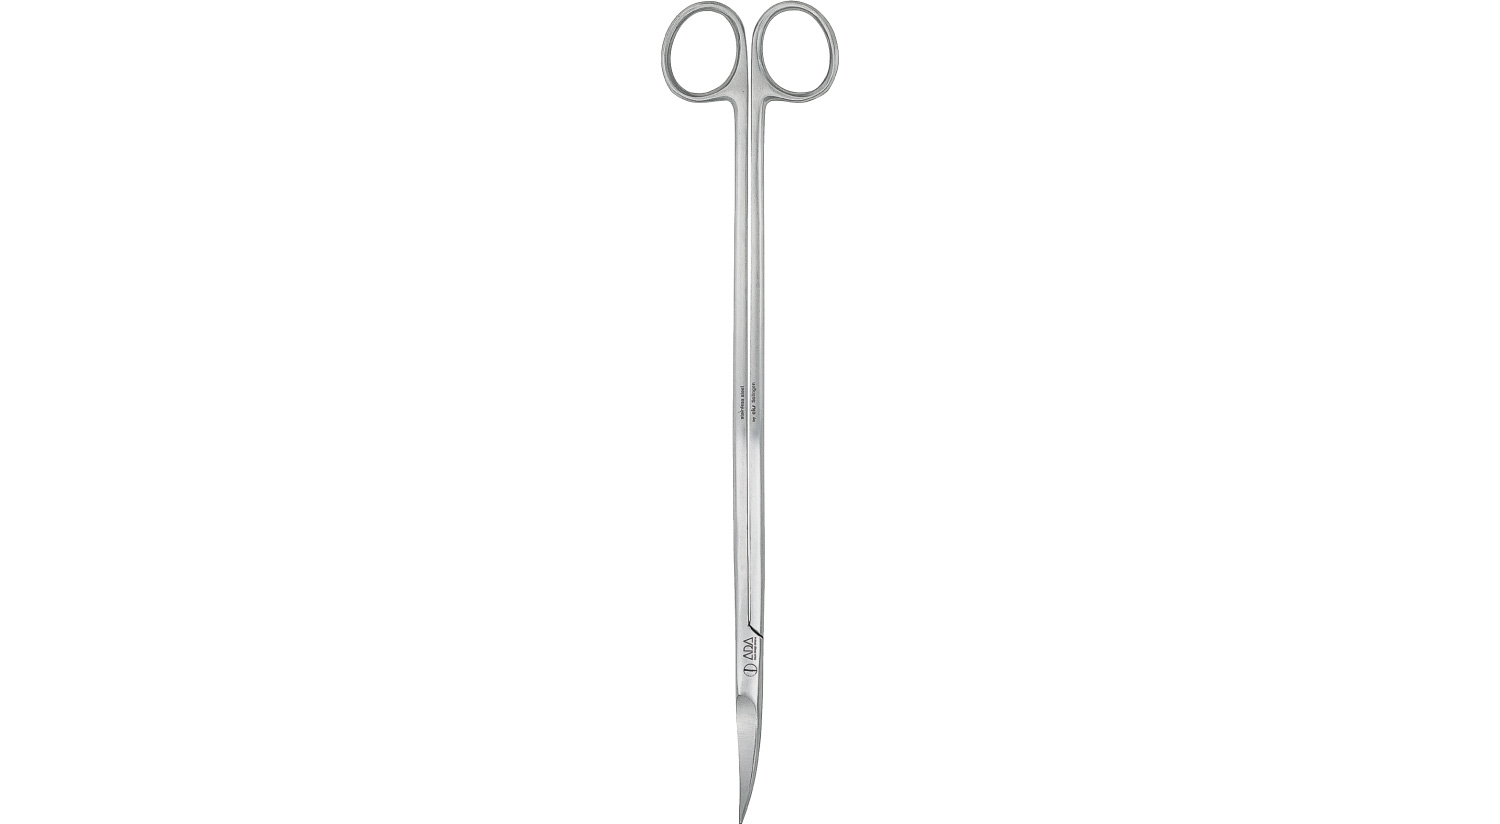 ADA - Pro-Scissors Short - Curve type